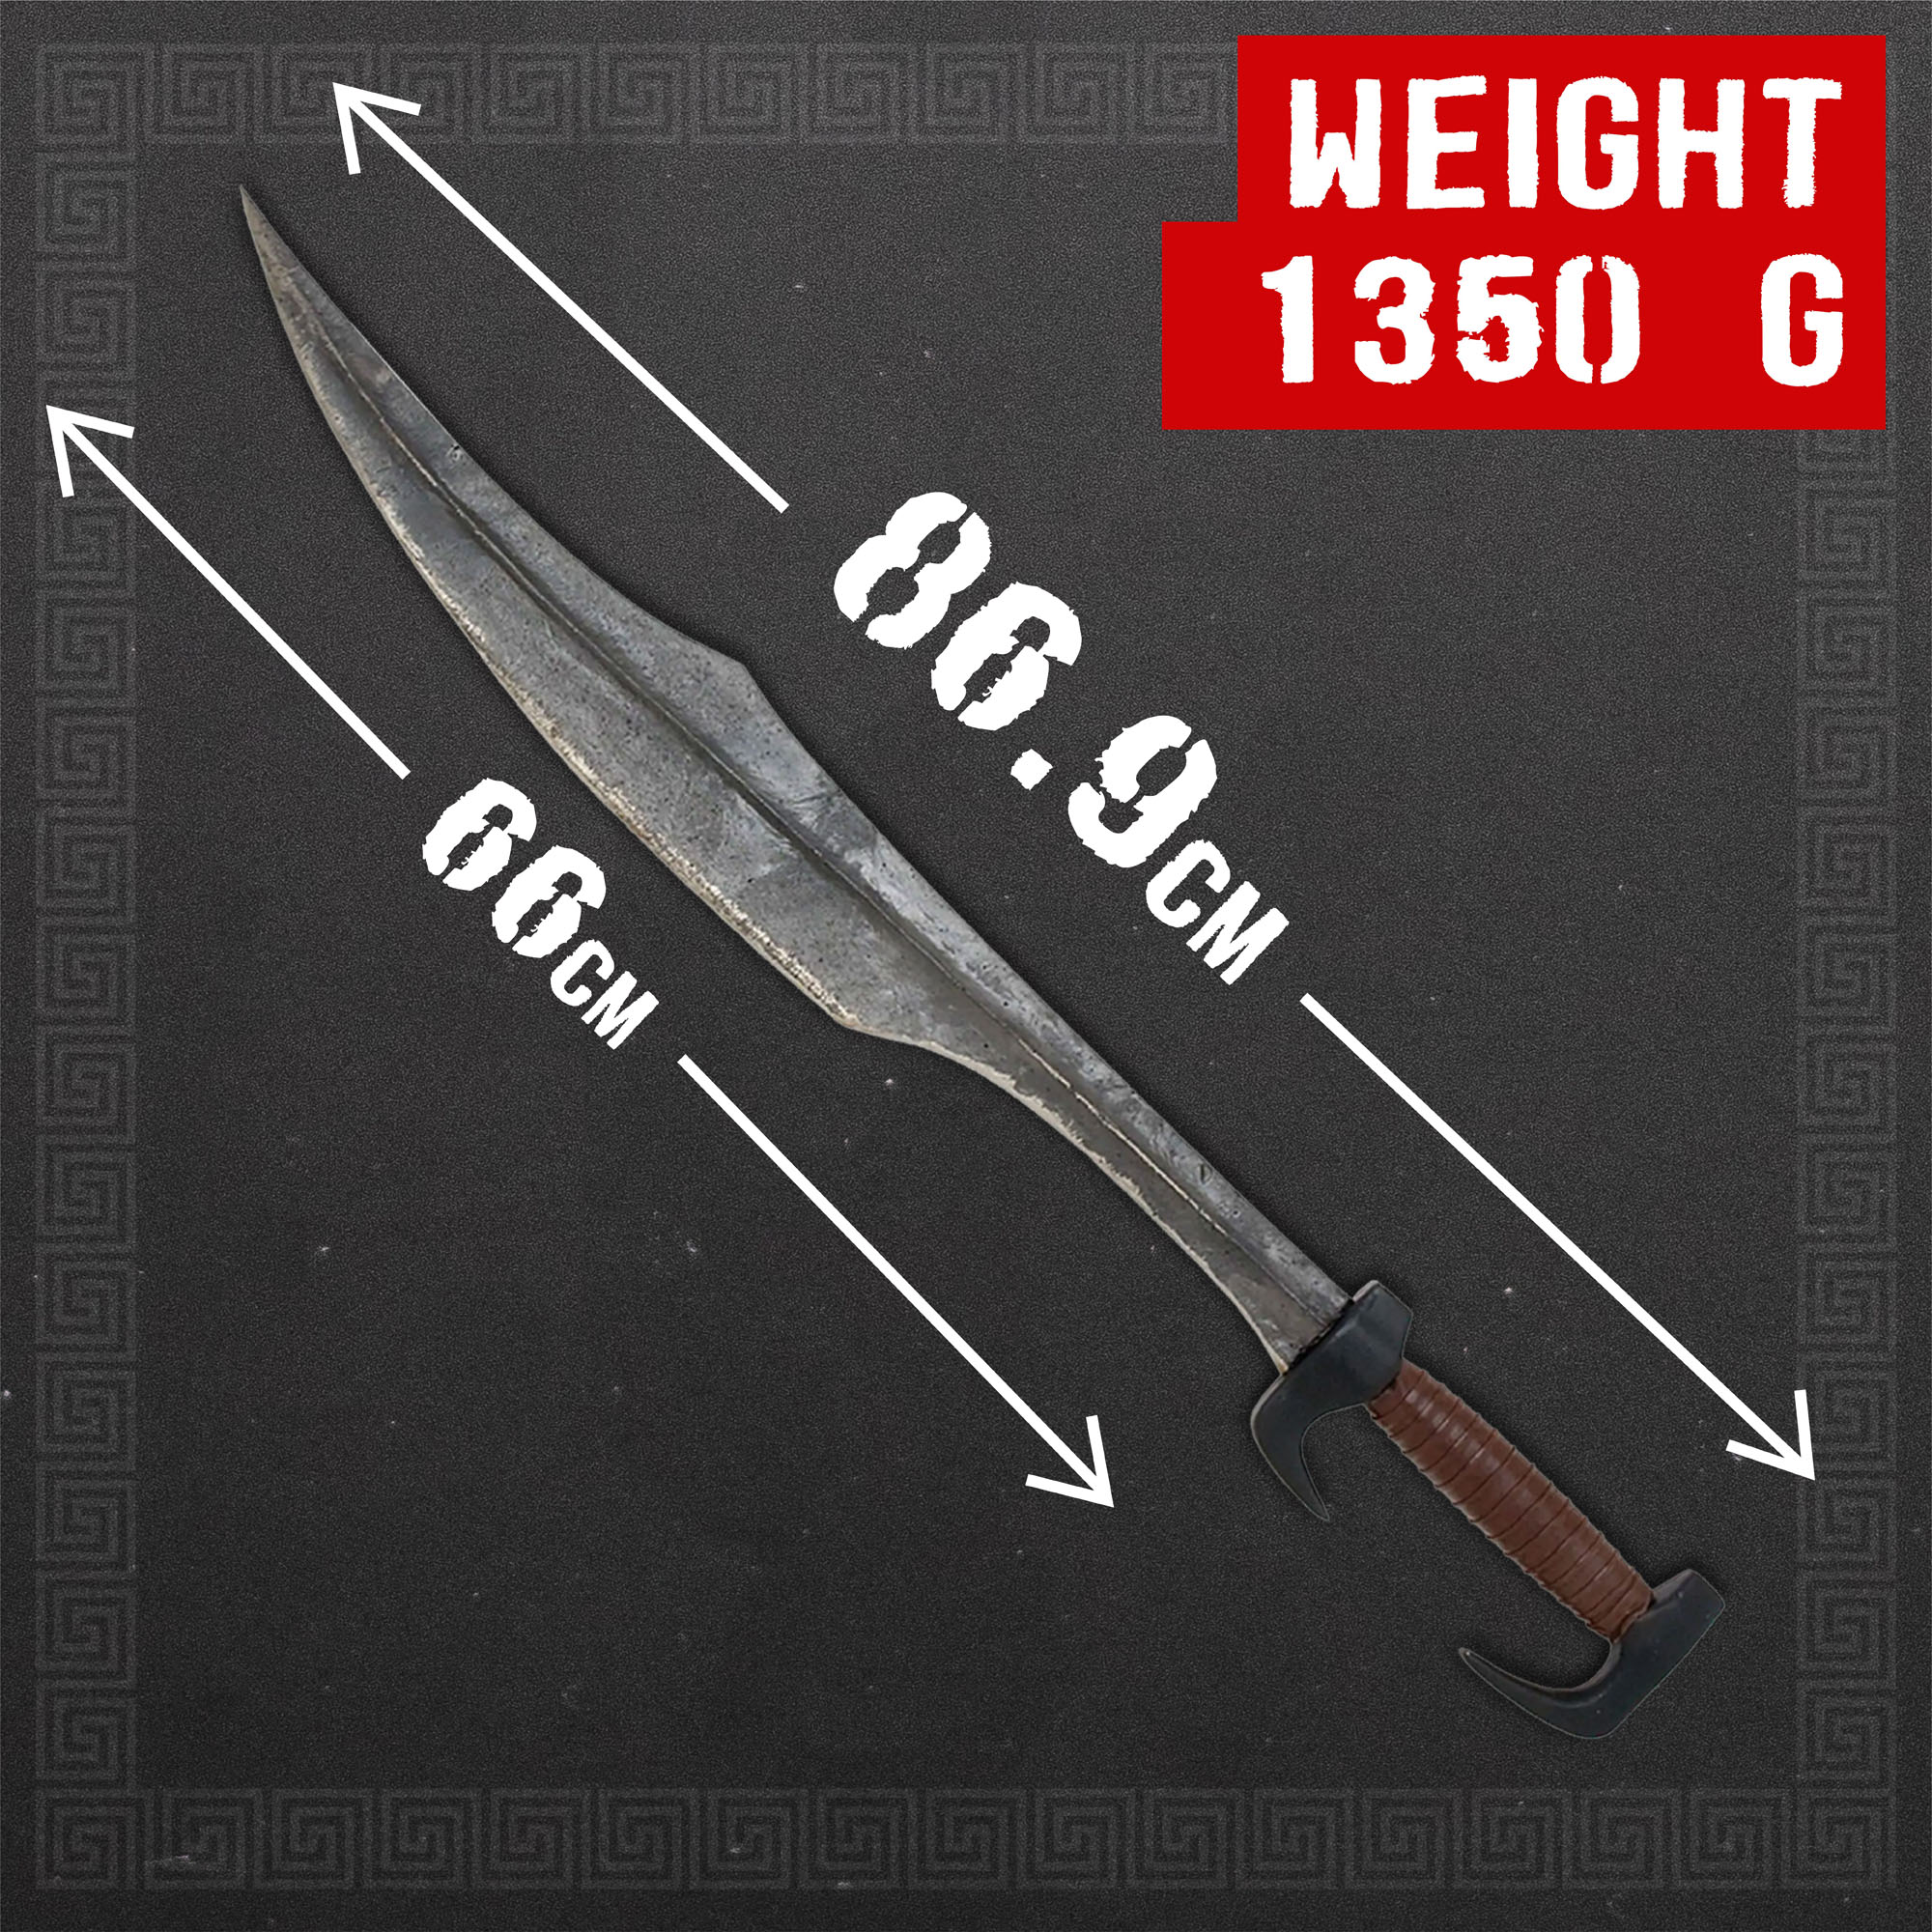 300 Schwert - antiqued